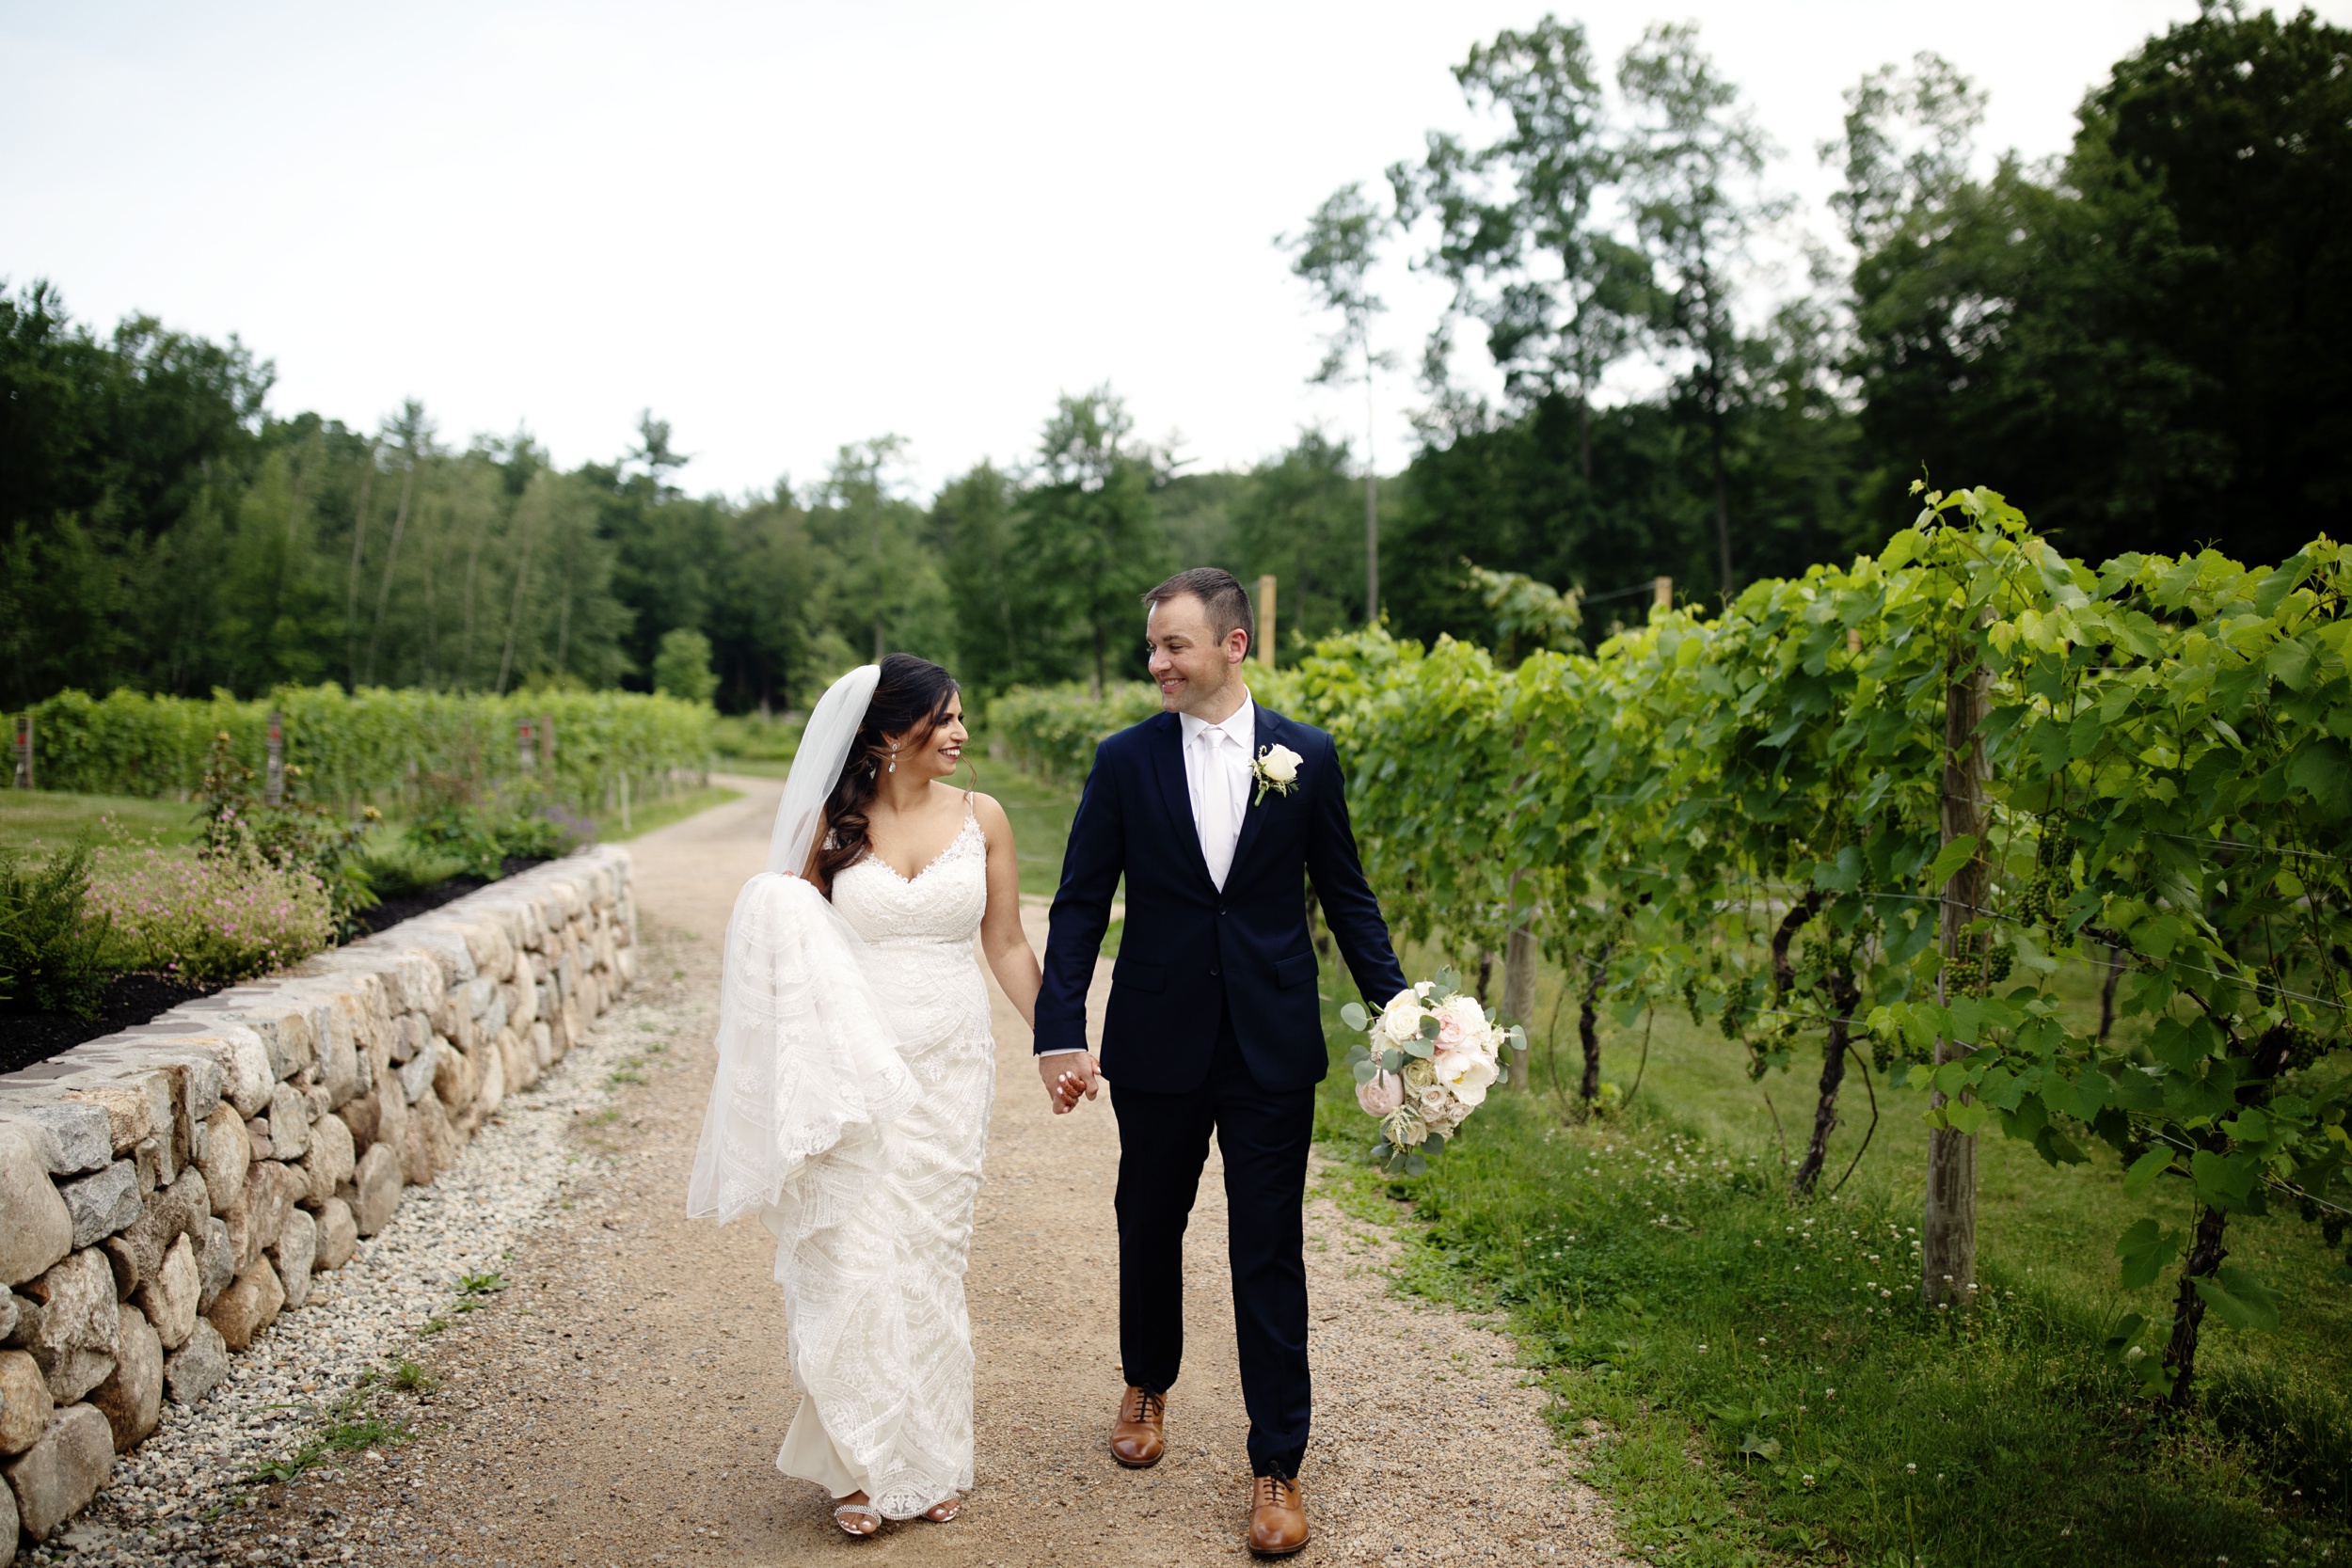 Zorvino Vineyards Wedding, Sandown New Hampshire Wedding, New England Destination Winery Wedding captured by East Coast Wedding Photographers Janae Rose Photography